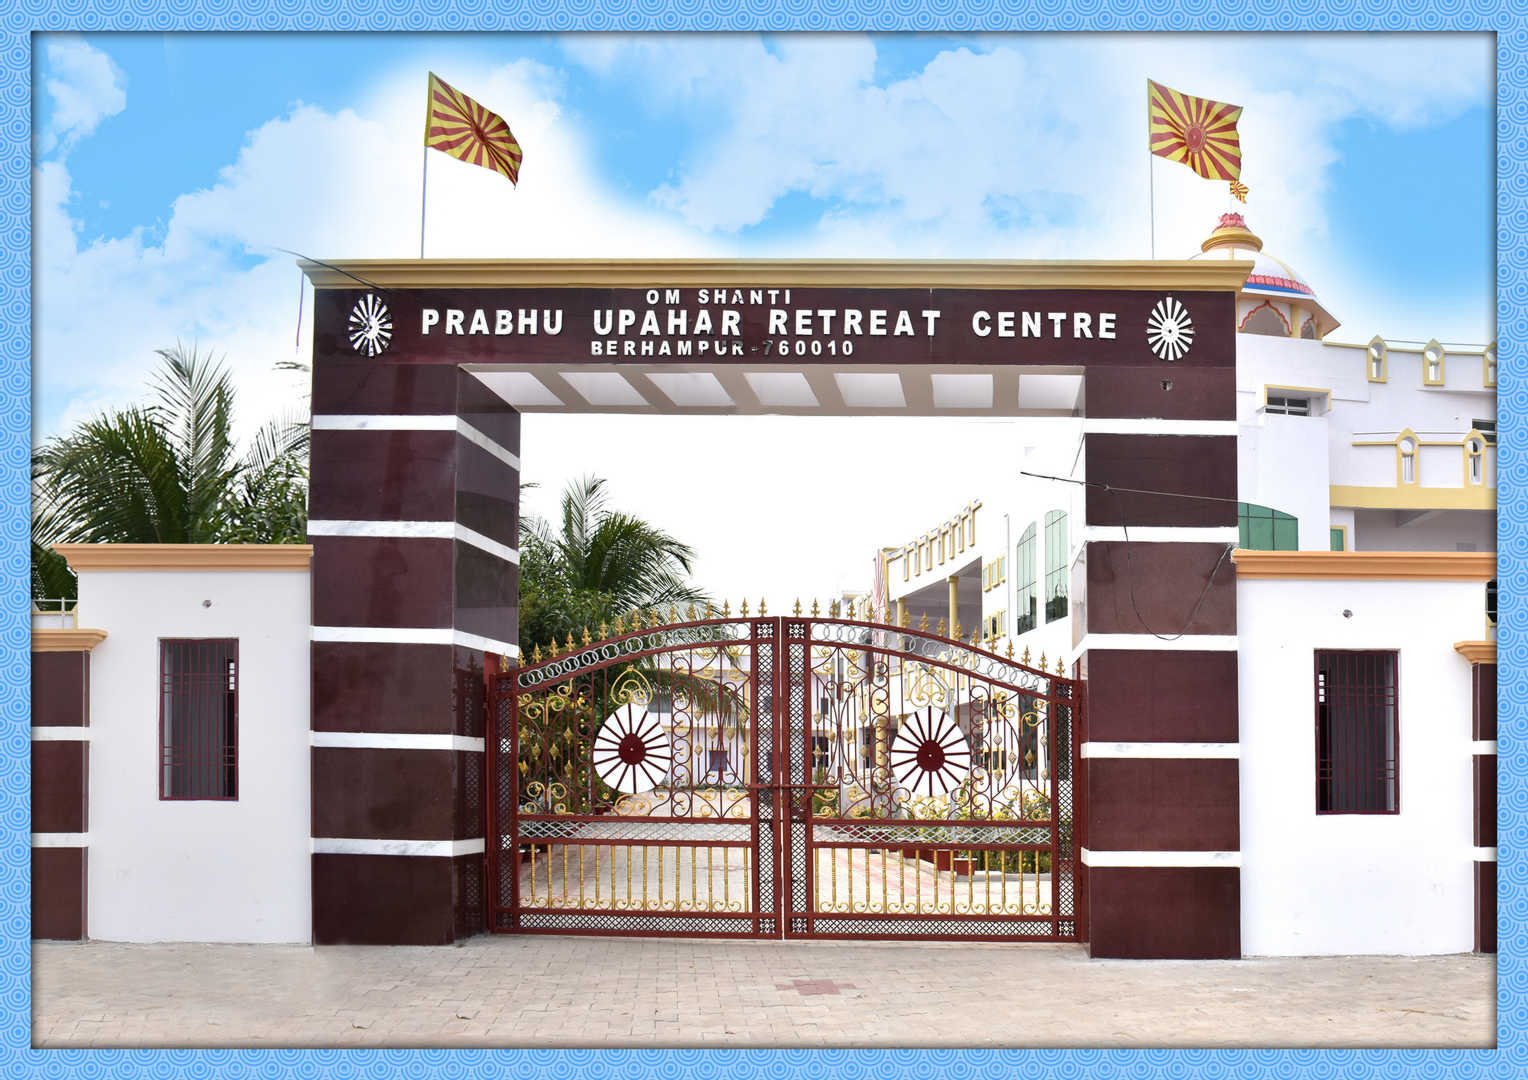 Prabhu upahar retreat centre brahmapur odisha - 4